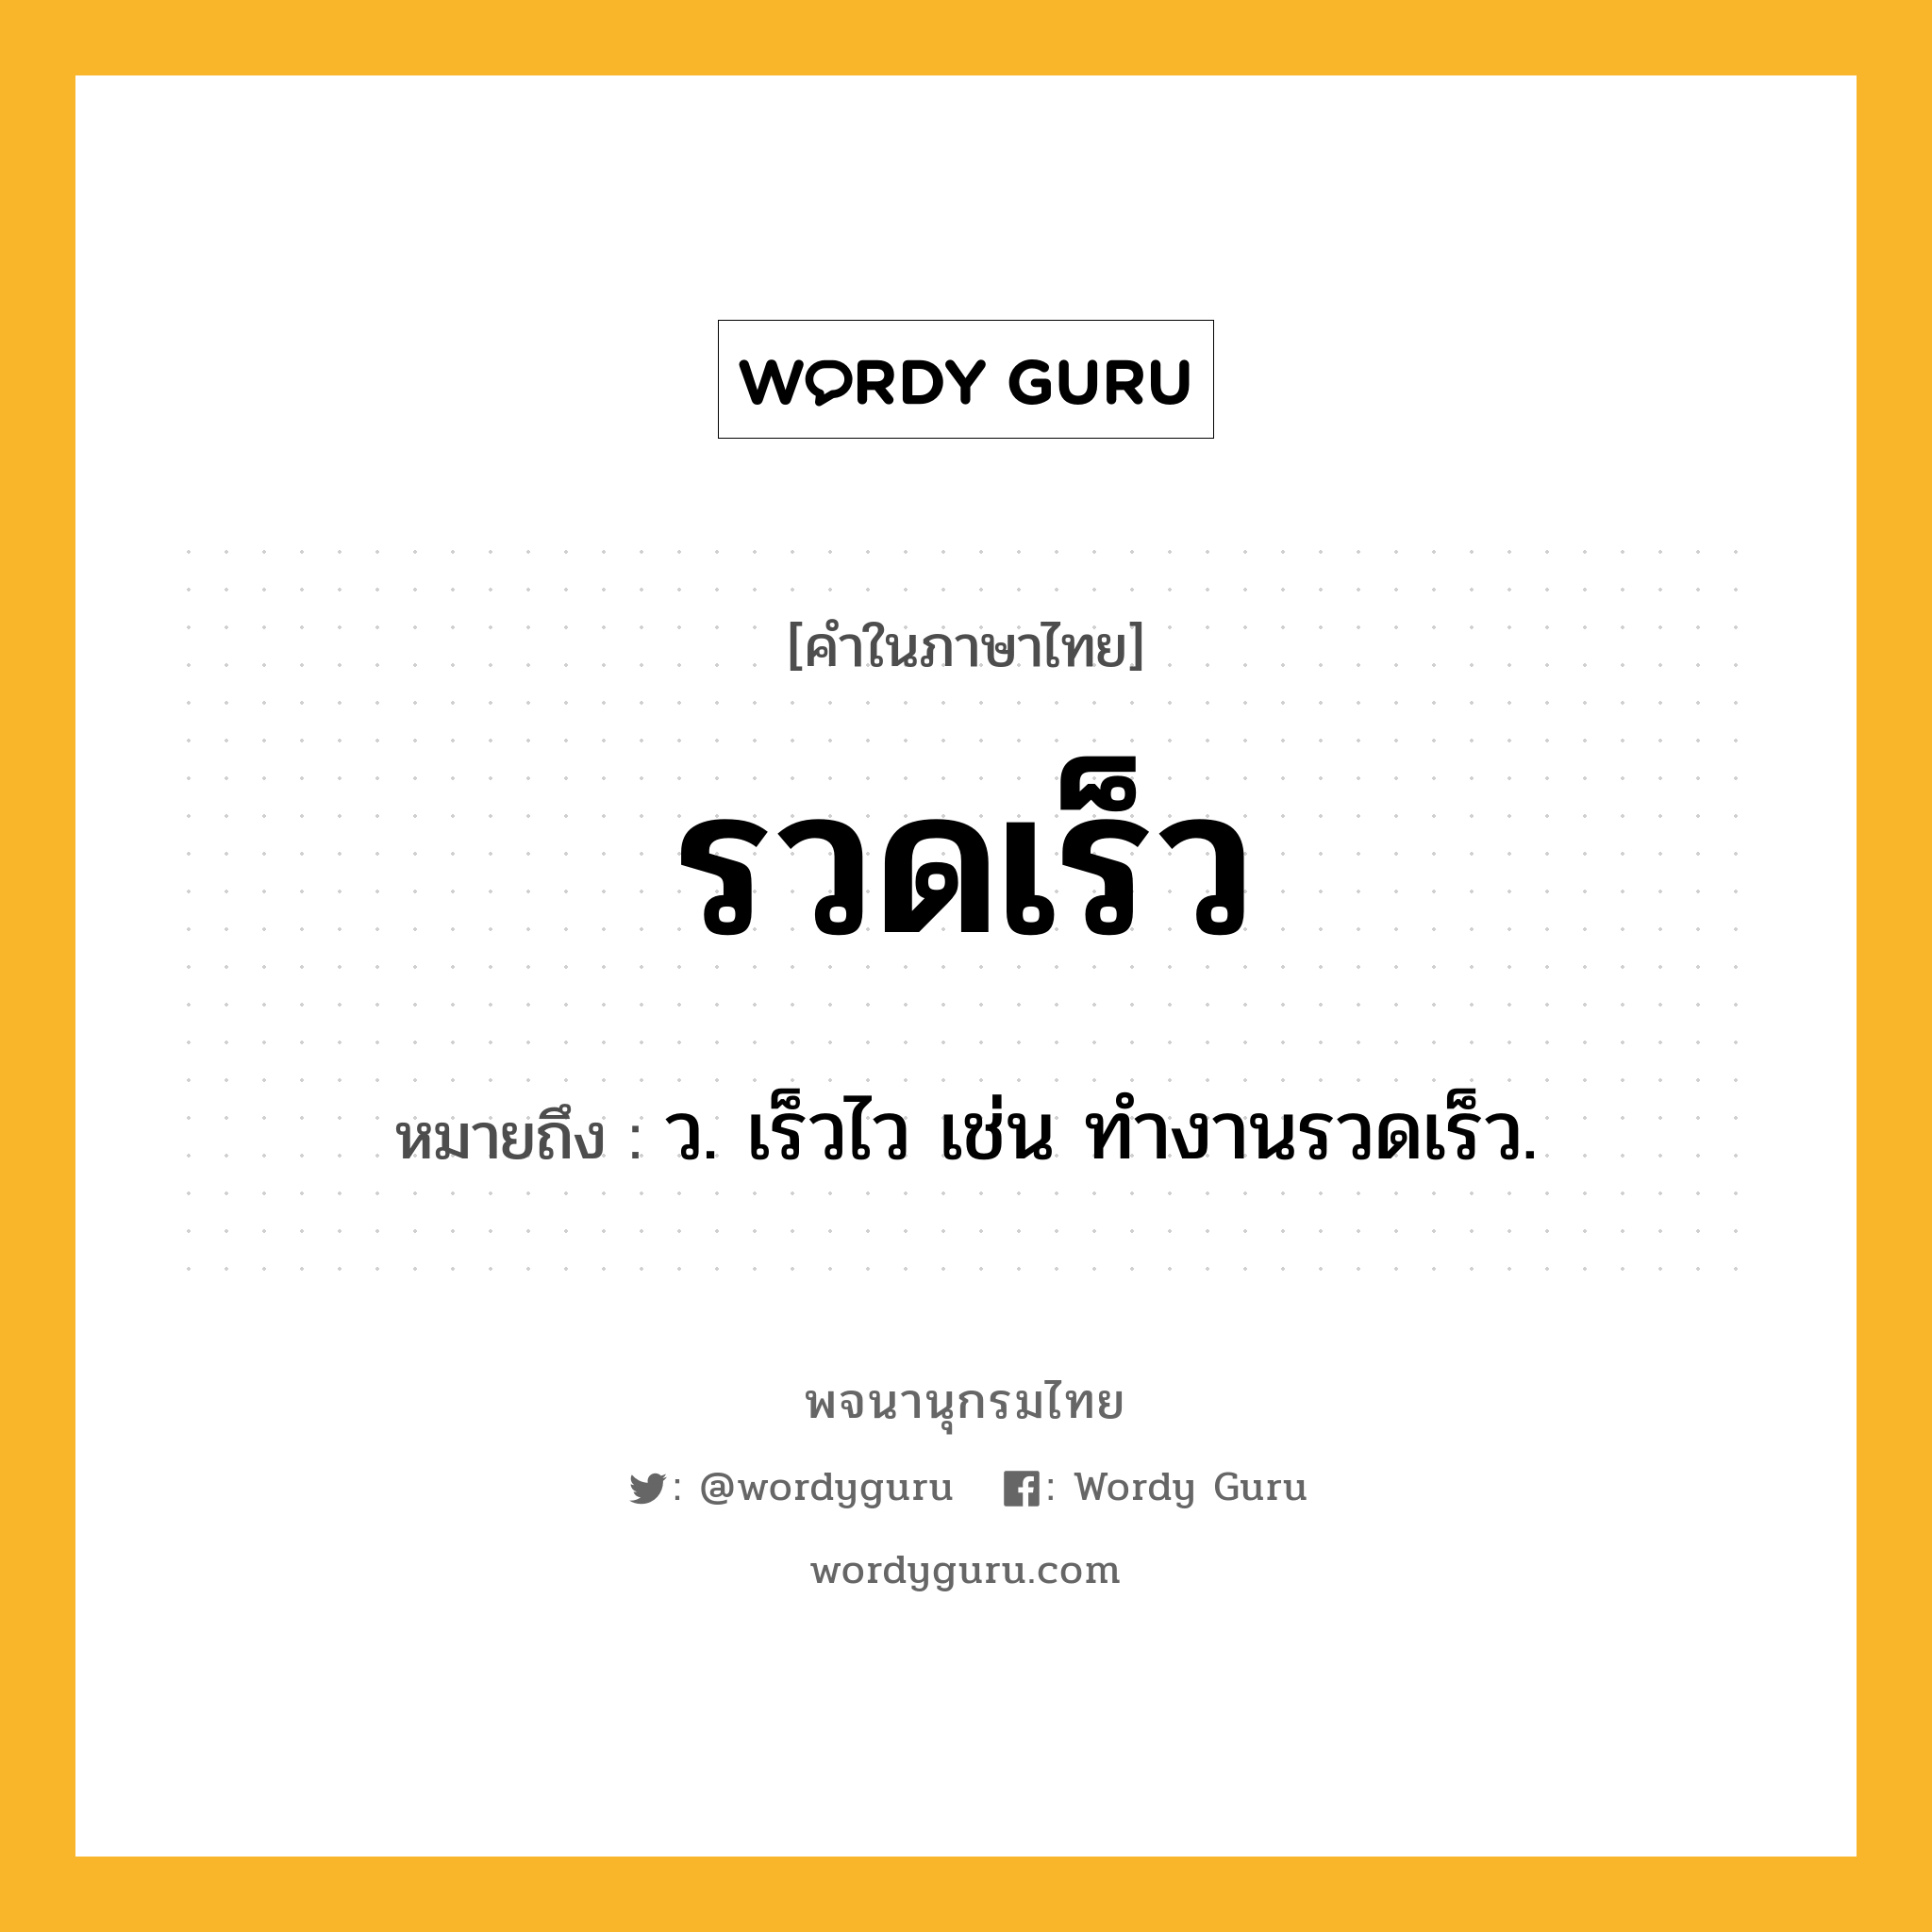 รวดเร็ว หมายถึงอะไร?, คำในภาษาไทย รวดเร็ว หมายถึง ว. เร็วไว เช่น ทำงานรวดเร็ว.